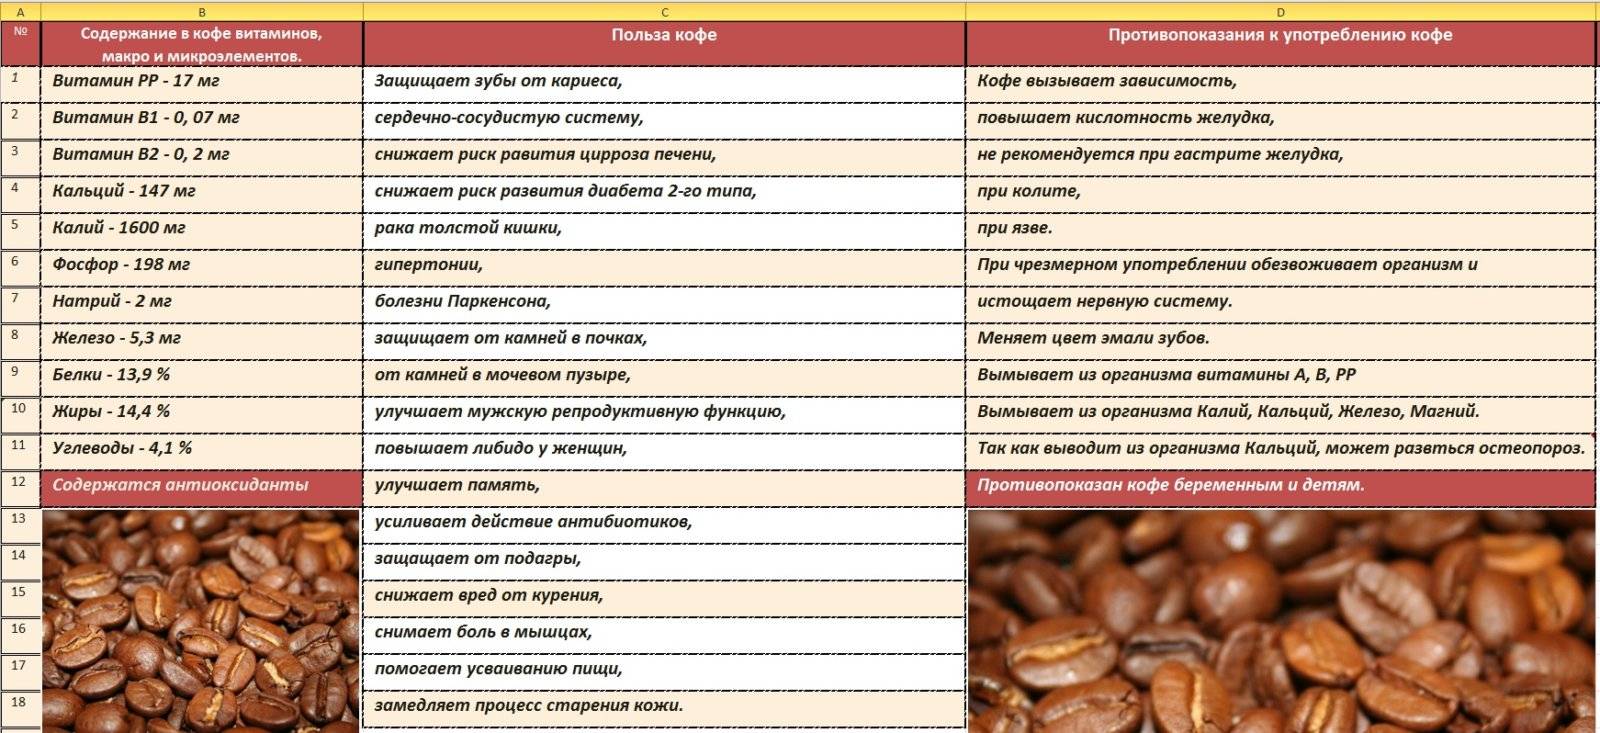 Взаимодействие кофе с разными лекарственными препаратами